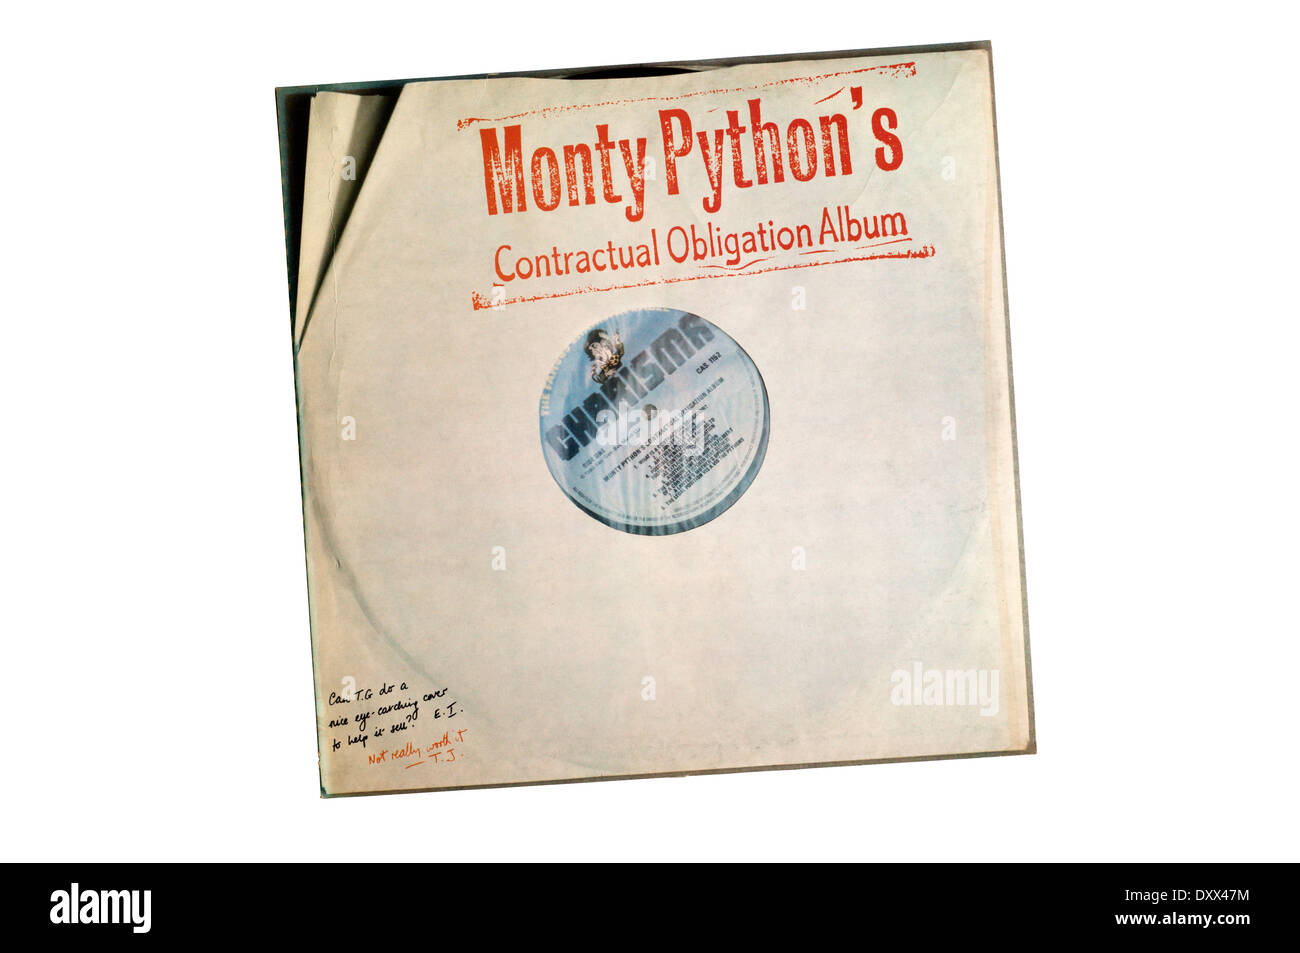 L'obligation contractuelle de Monty Python, album publié par les Monty Python en 1980 à remplir un contrat avec Charisma Records. Banque D'Images